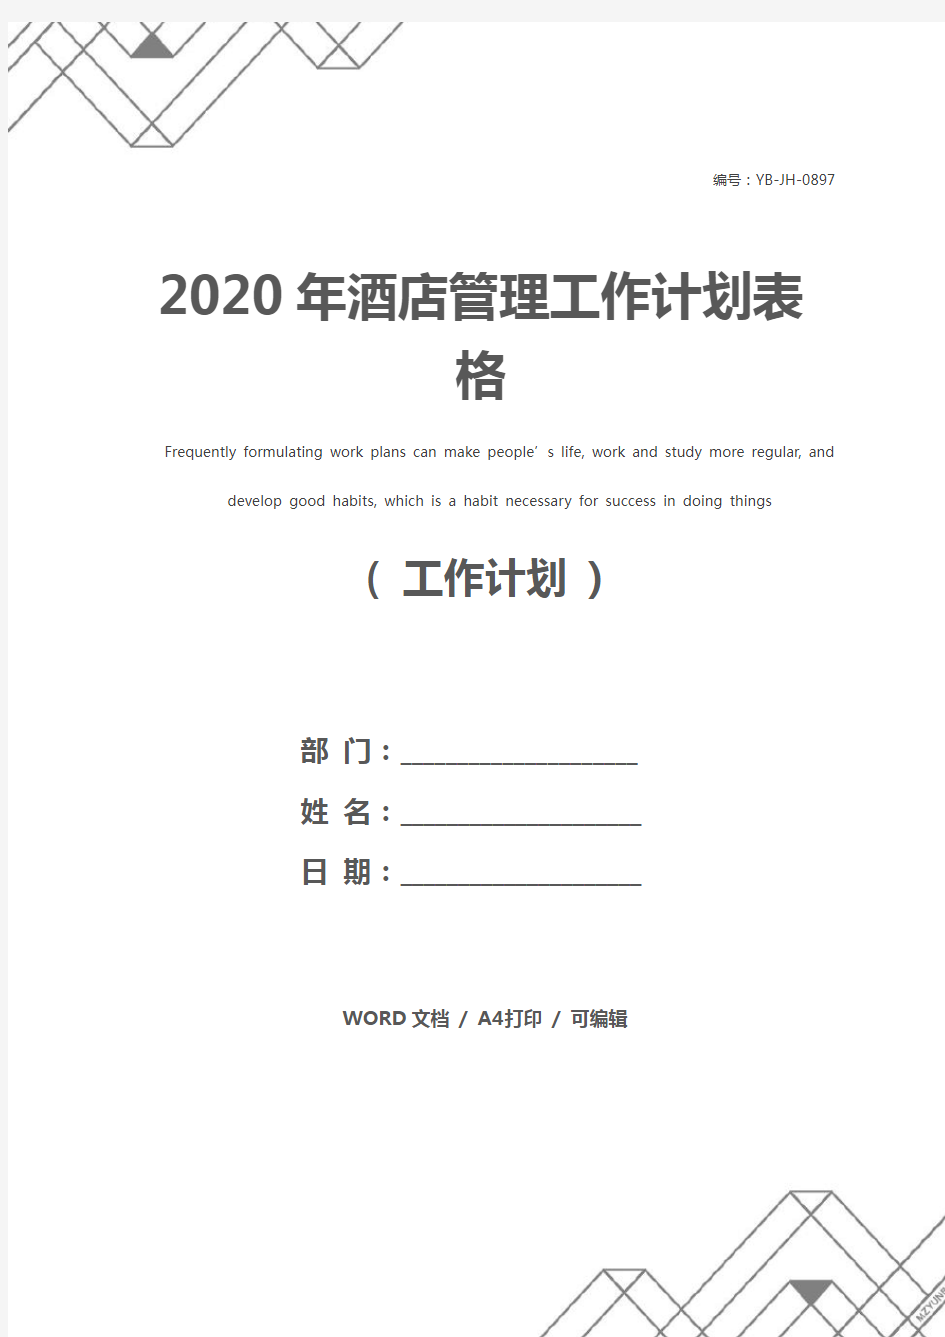 2020年酒店管理工作计划表格